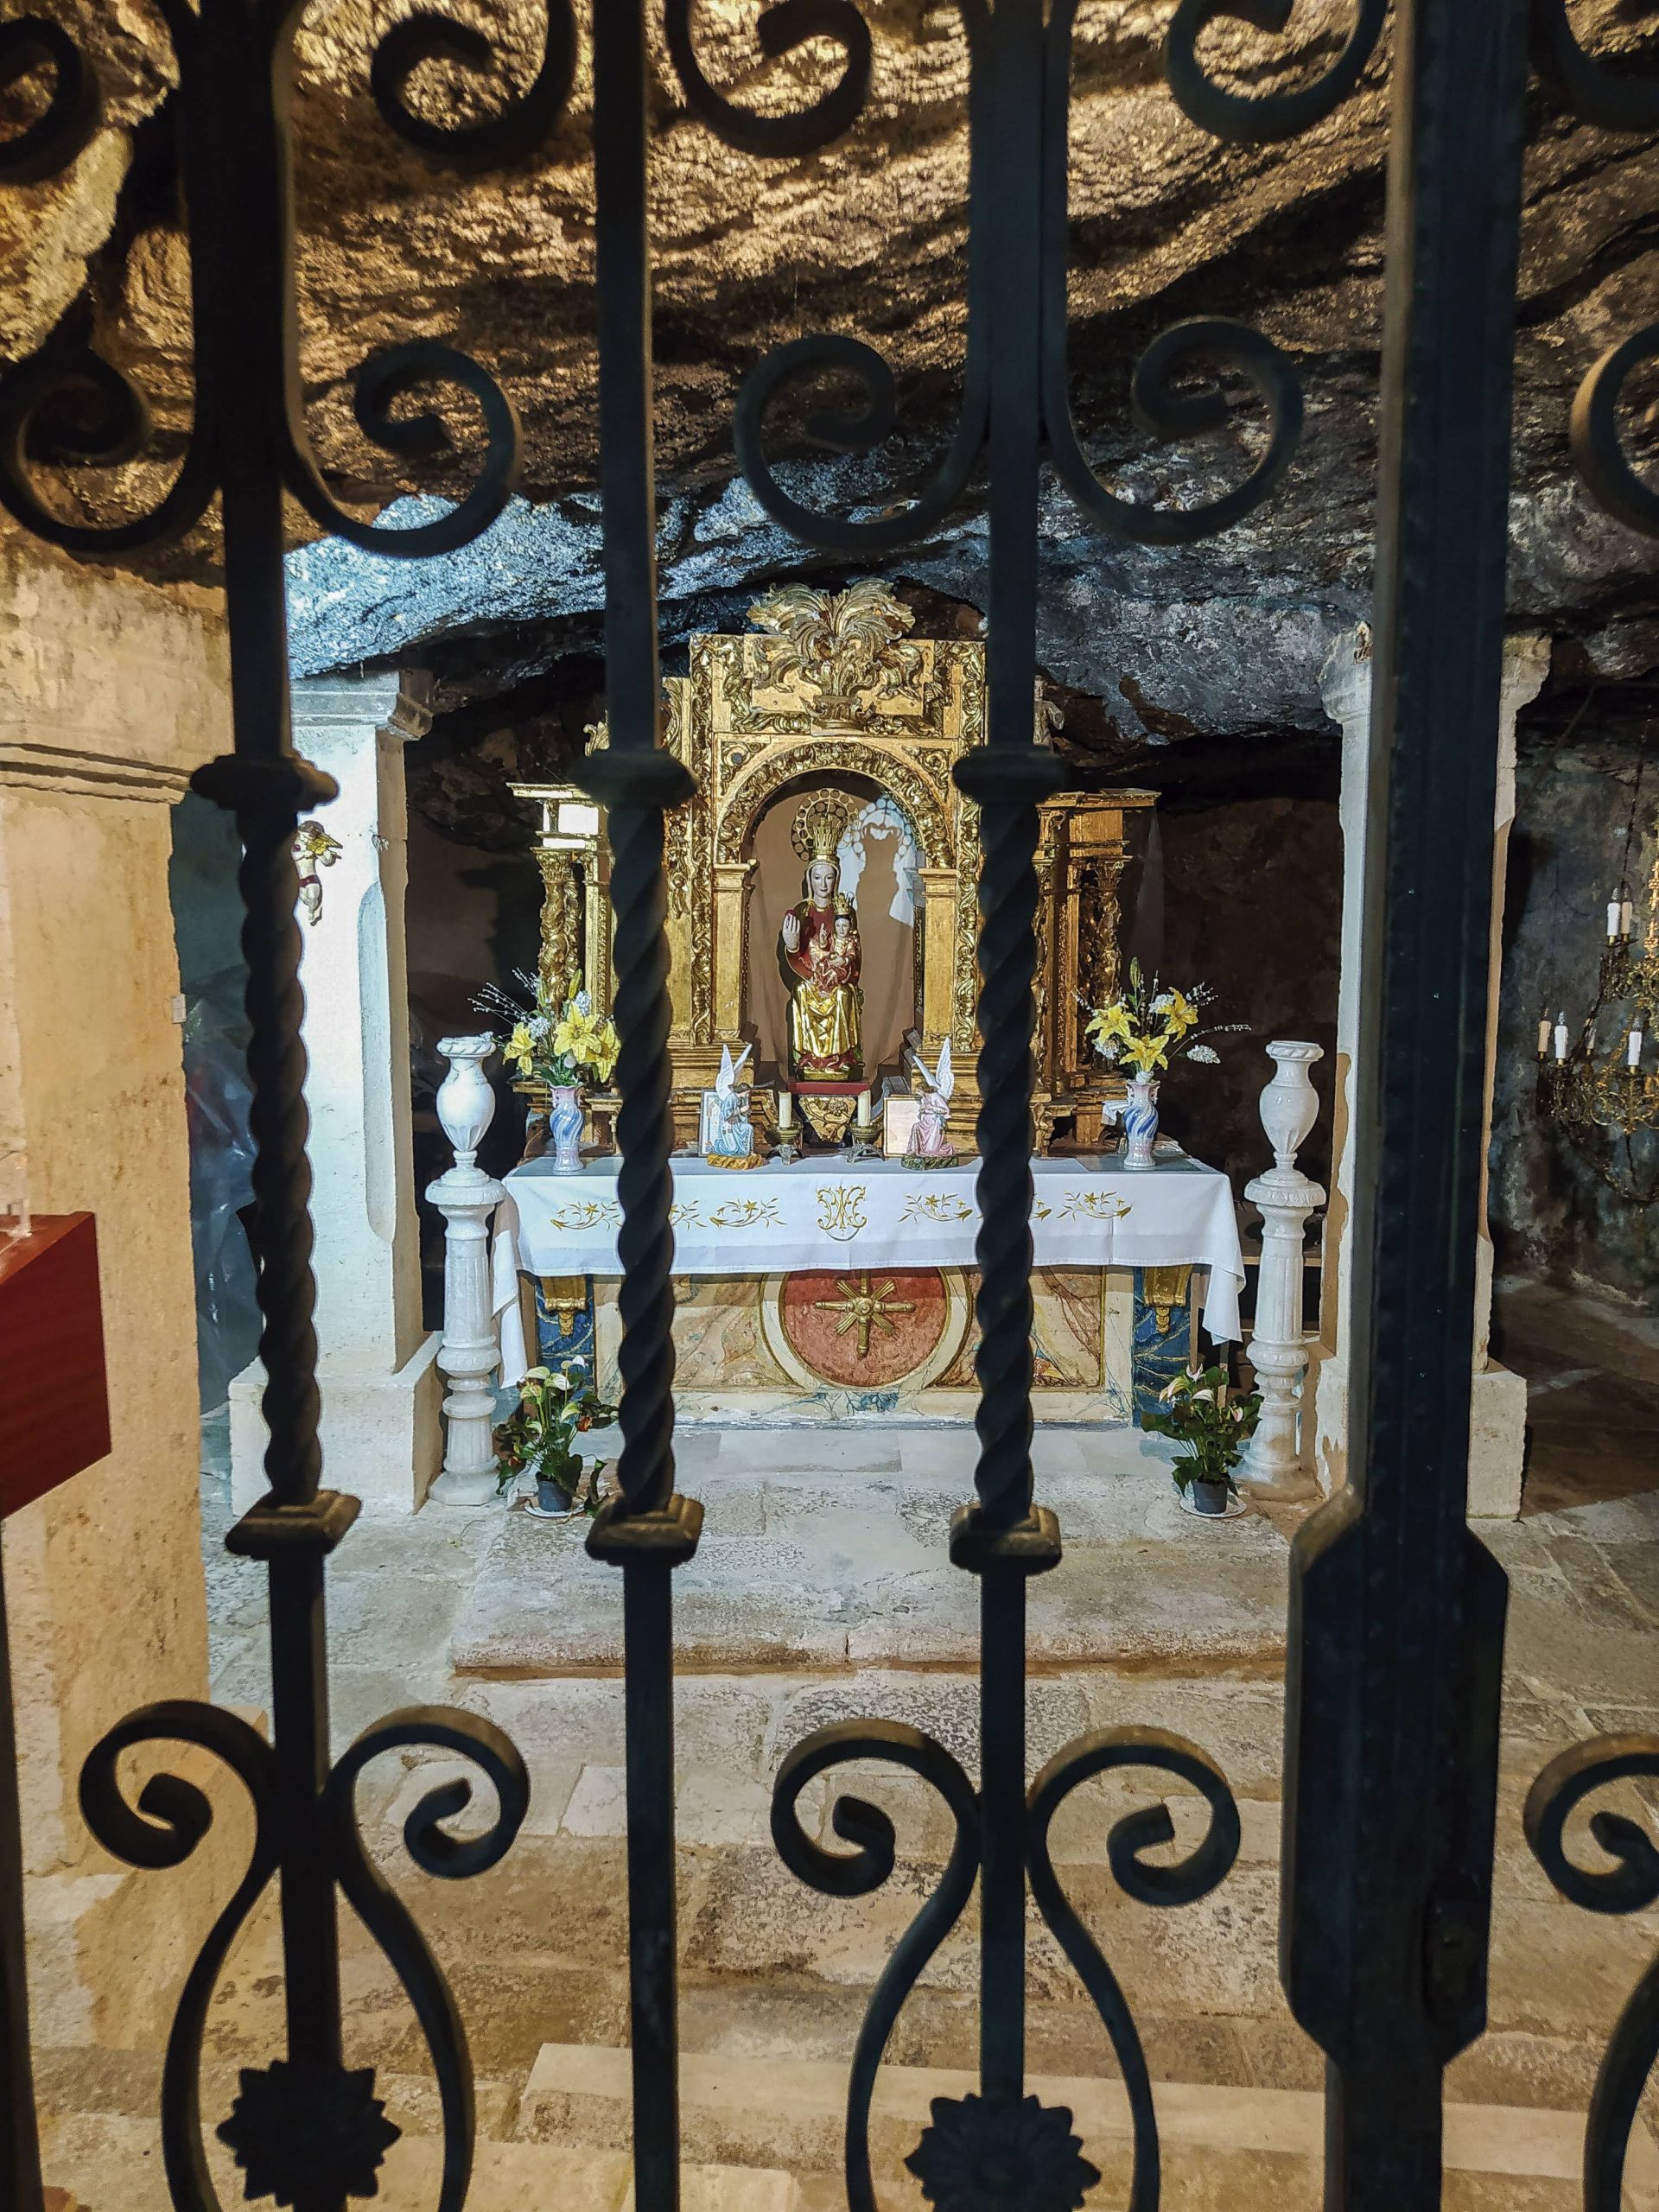 imagen de la patrona, localizada en el centro de un retablo barroco.